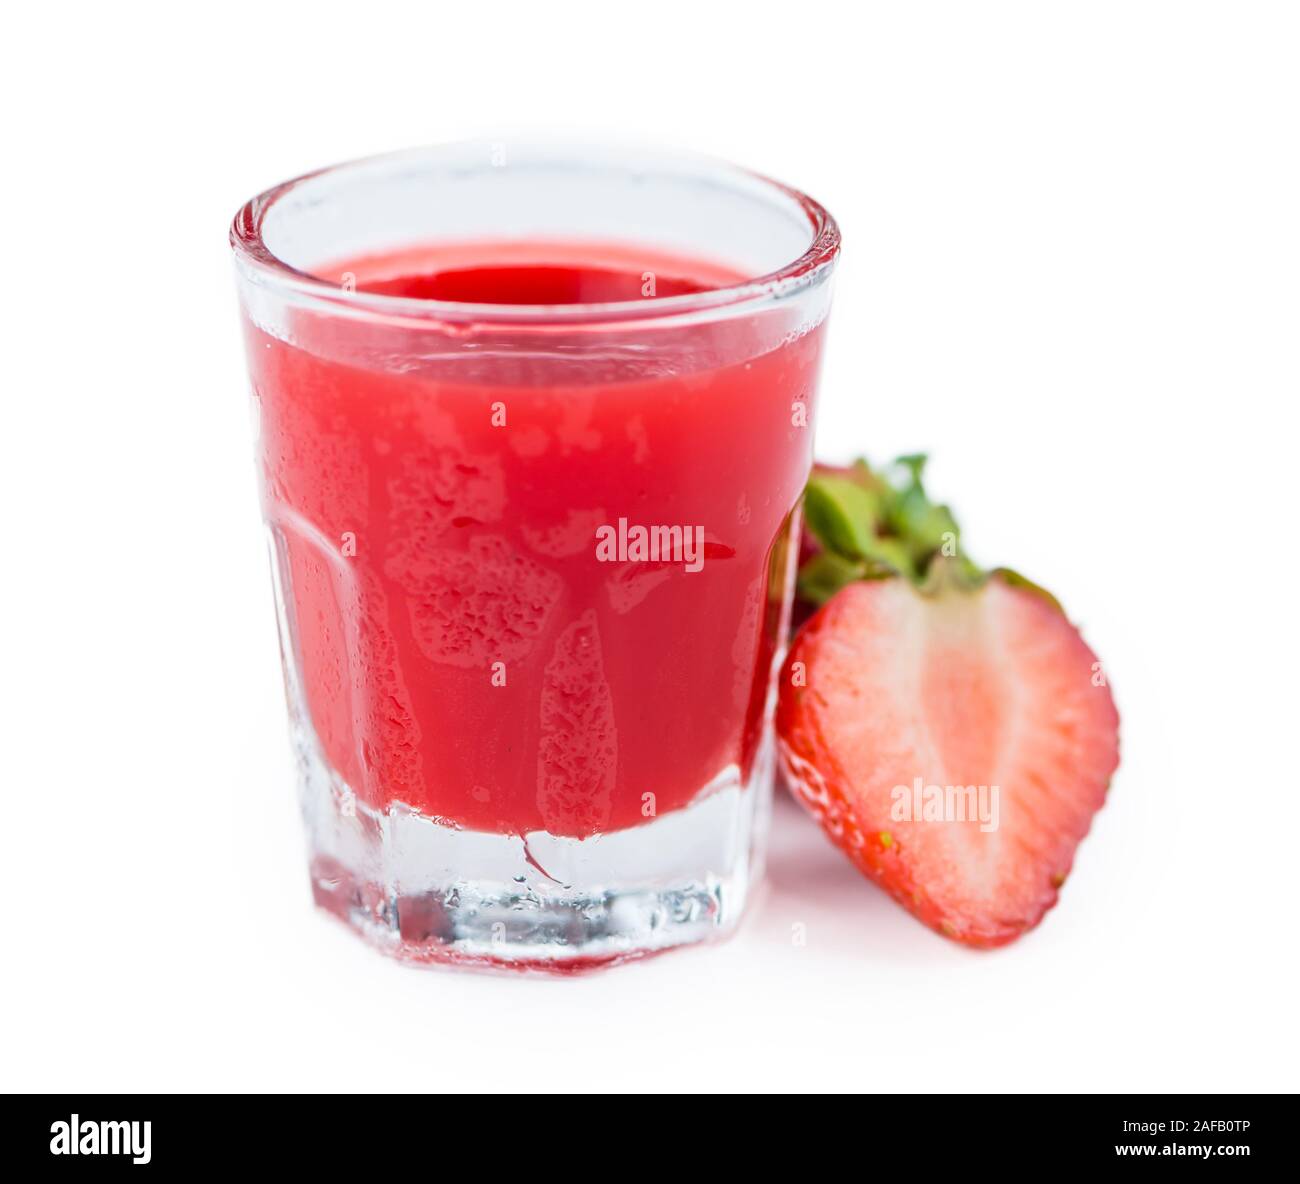 Liqueur de fraises isolé sur fond blanc, portrait, close-up shot Banque D'Images